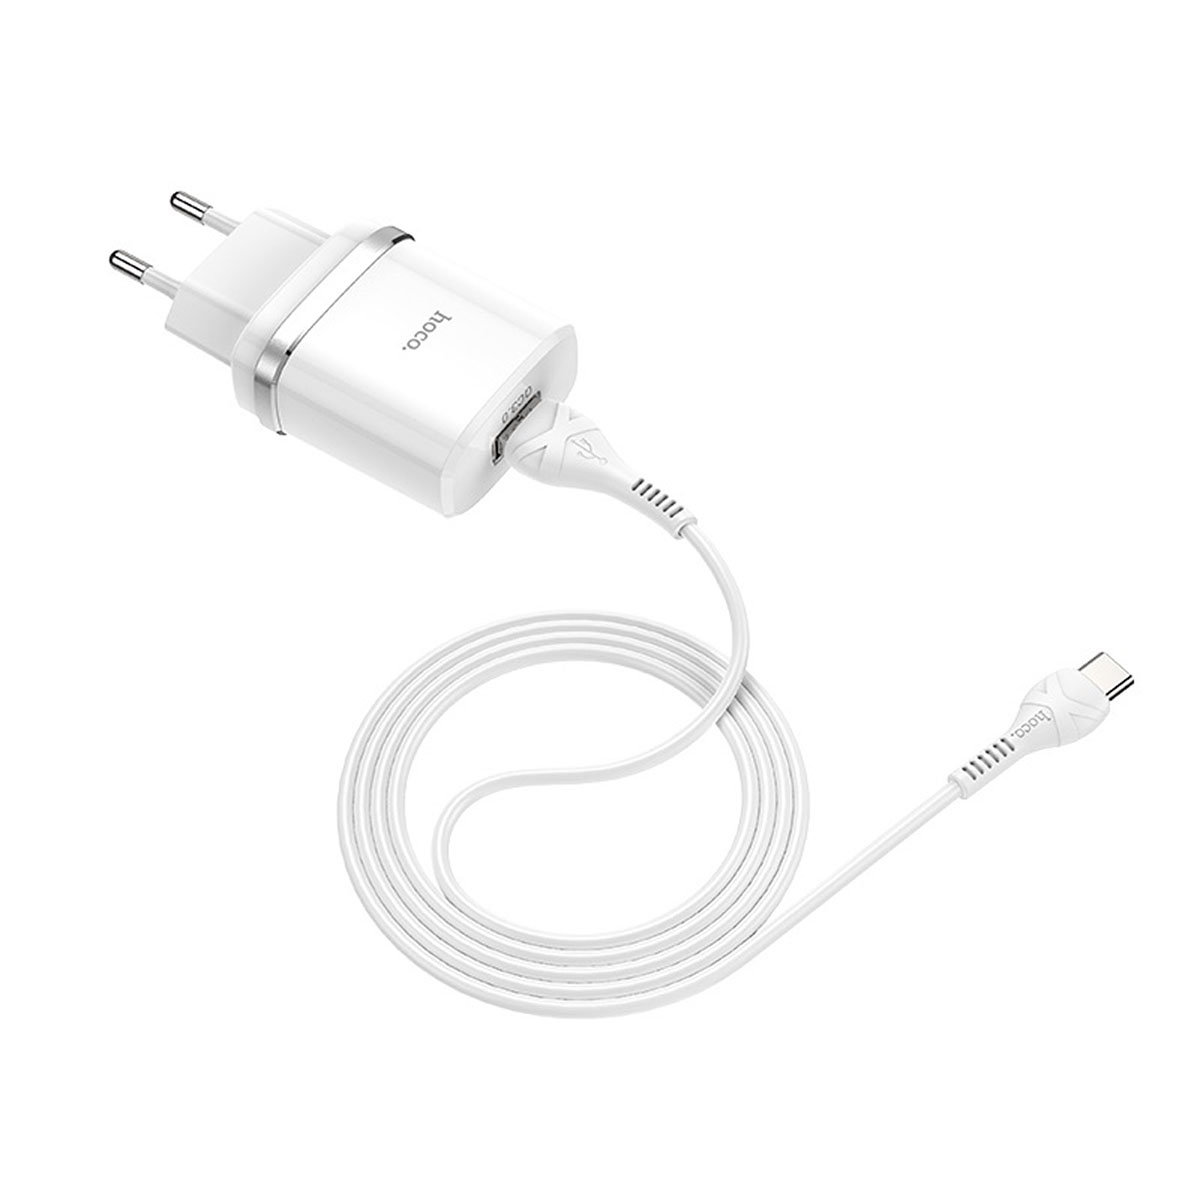 СЗУ (Сетевое зарядное устройство) HOCO C12Q Smart с кабелем USB Type C, 3A, 1 USB, QC3.0, длина 1 метр, цвет белый